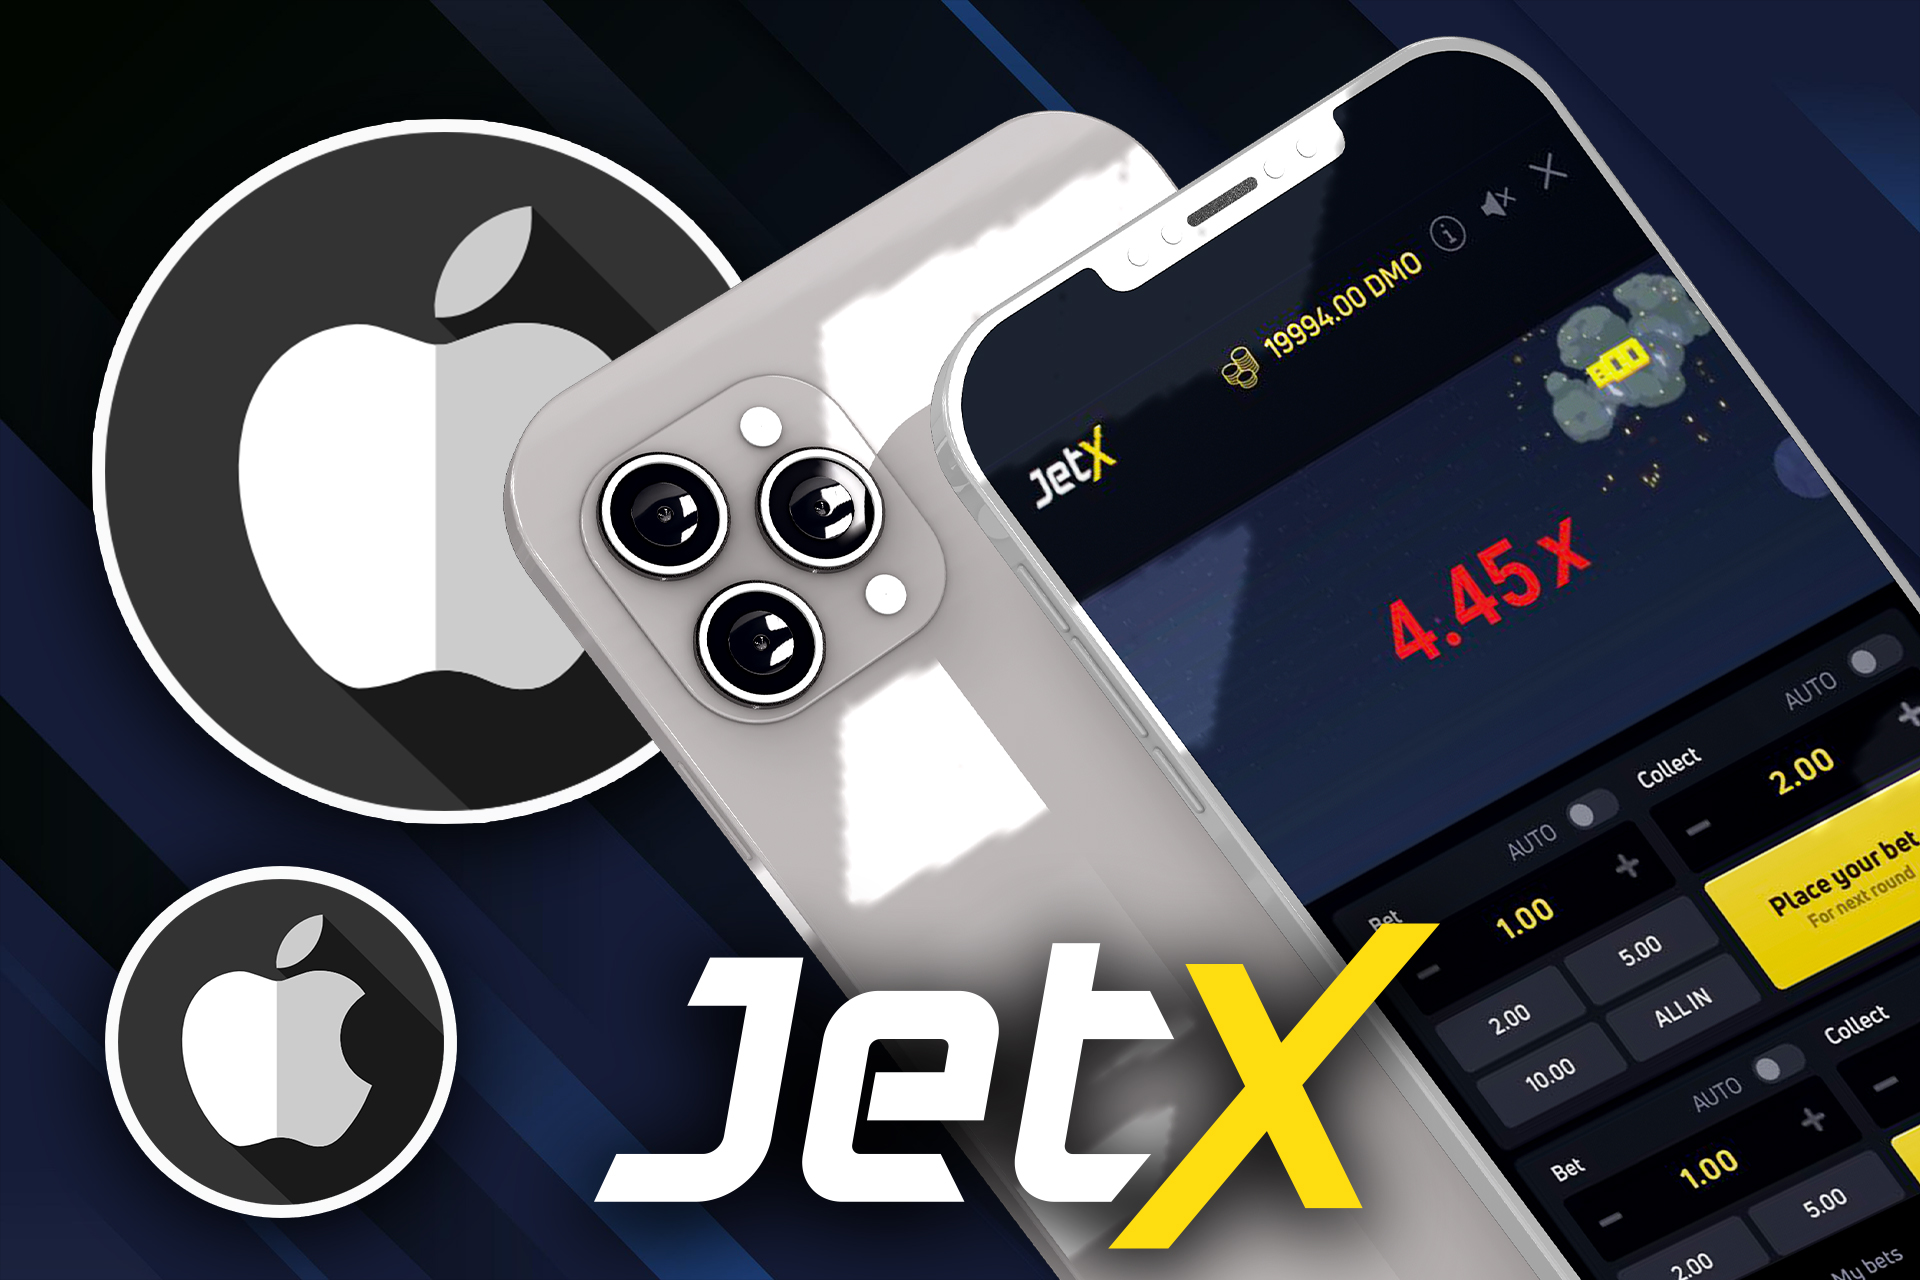 Puedes jugar a Jet X a través de la aplicación 1win de tu iPhone.